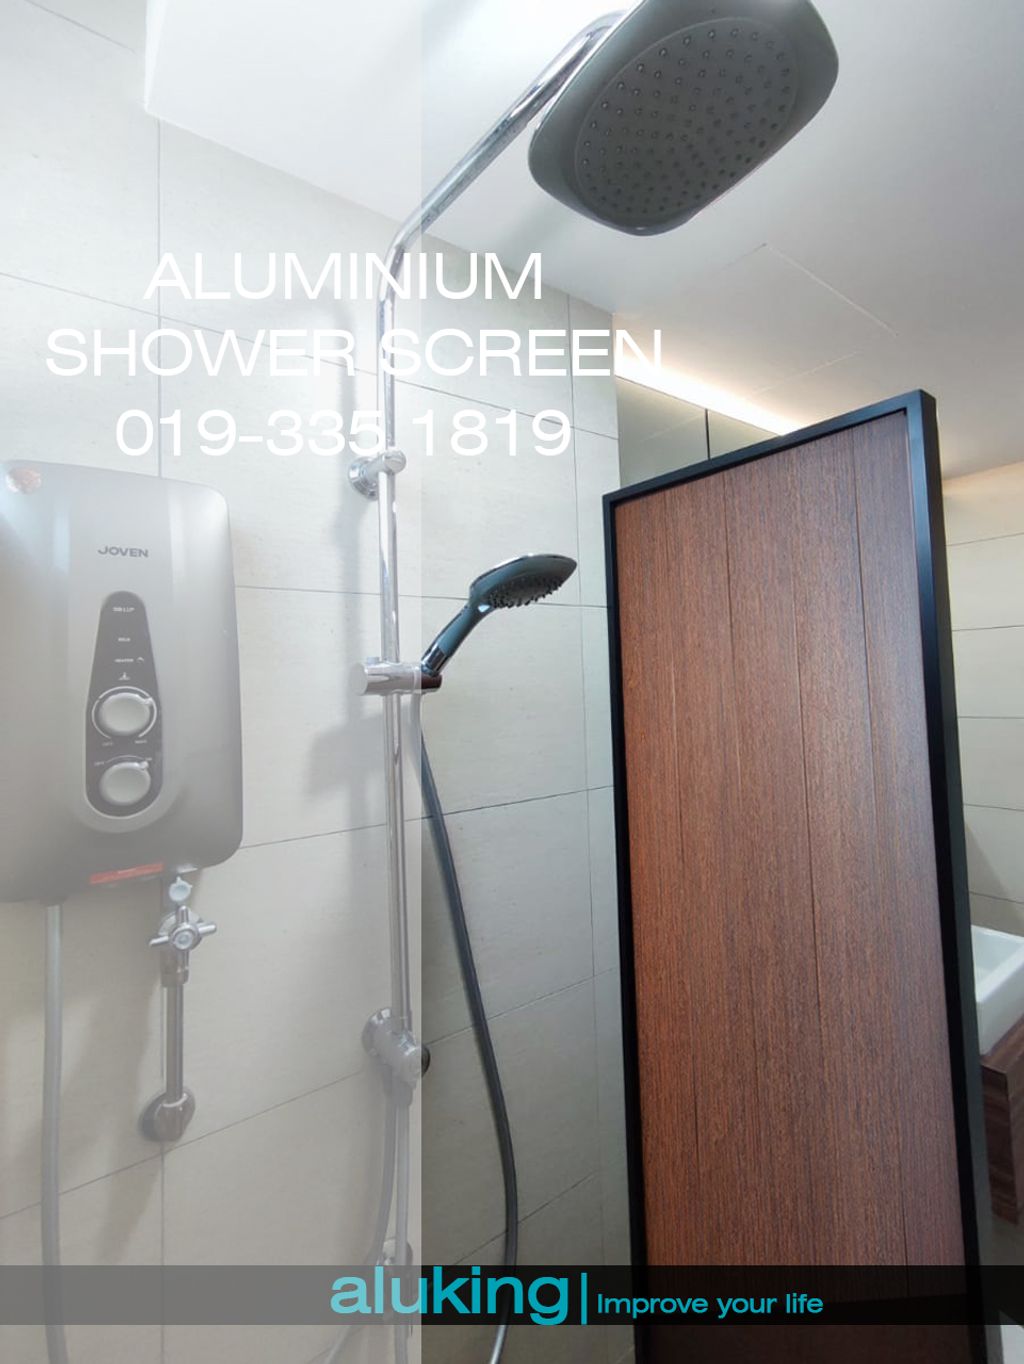 aluminium shower screen.jpg